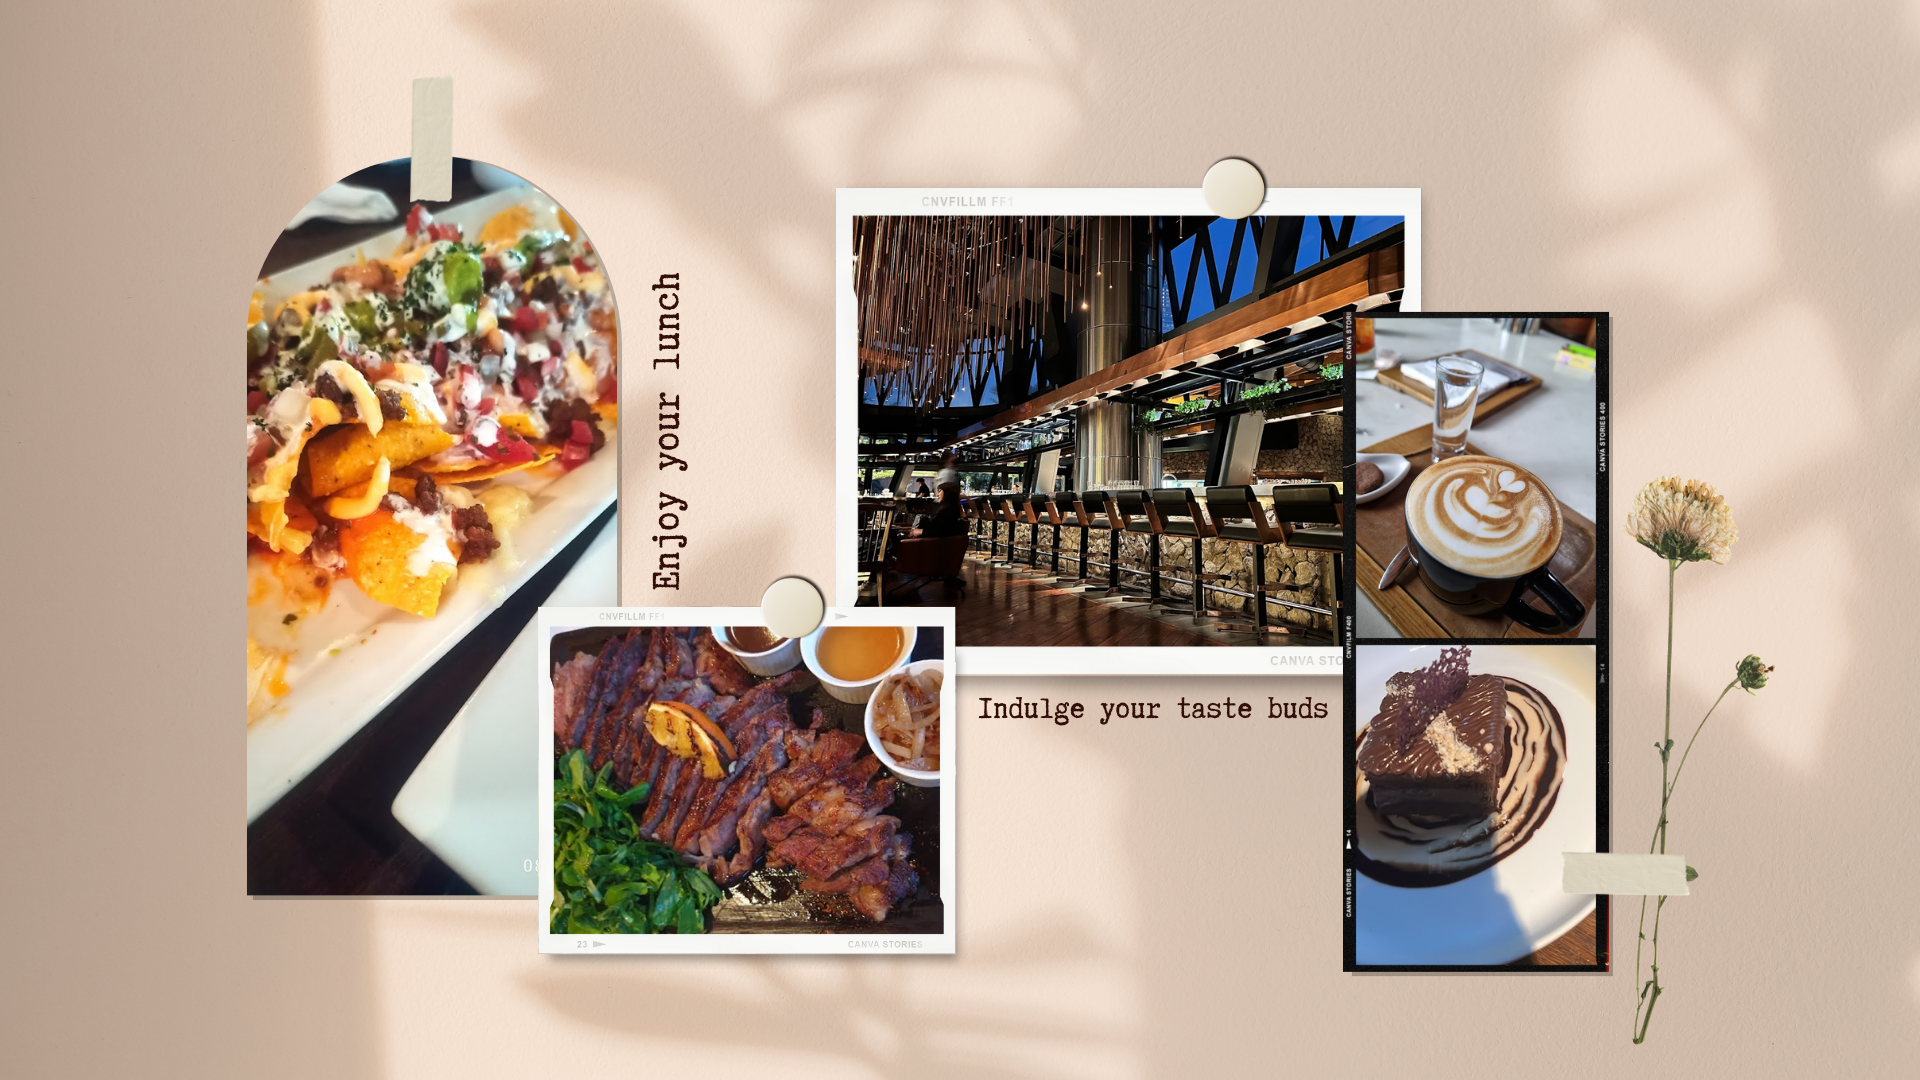 17 Restoran untuk Makan Siang di Jakarta Selatan - YOEXPLORE - Bluegrass Bar & Grill 